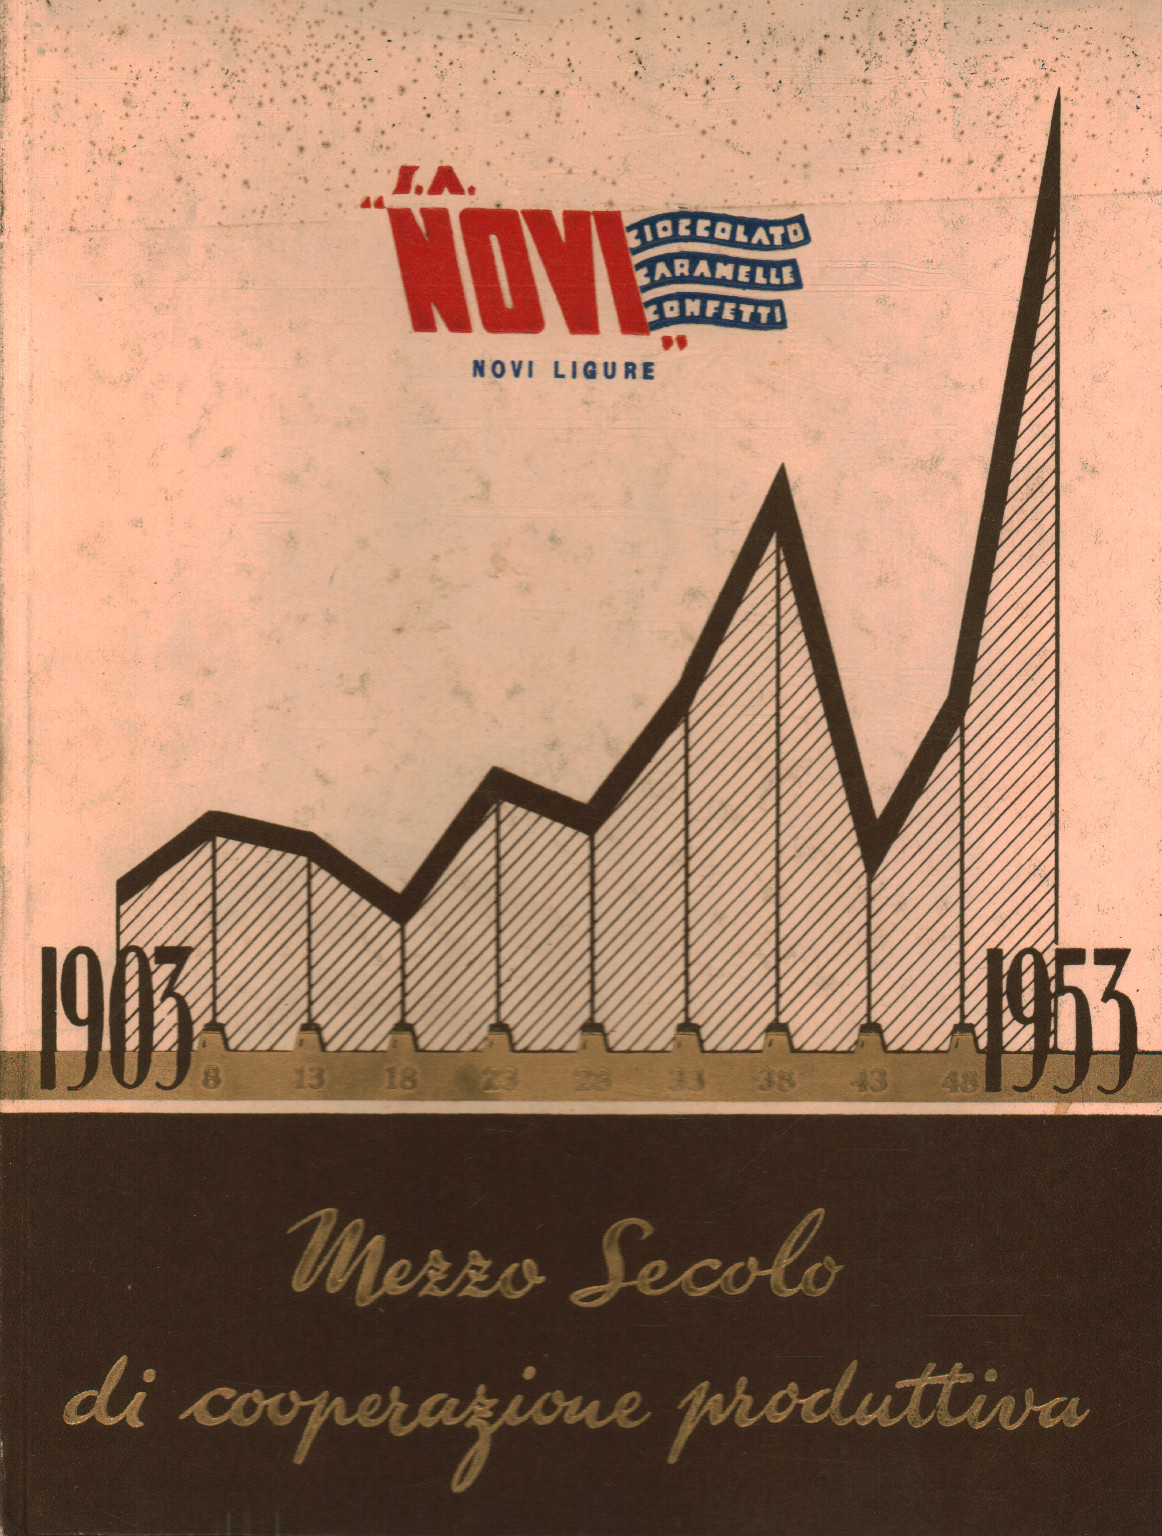 1903-1953 Mezzo secolo di cooperazione produttiva, s.a.